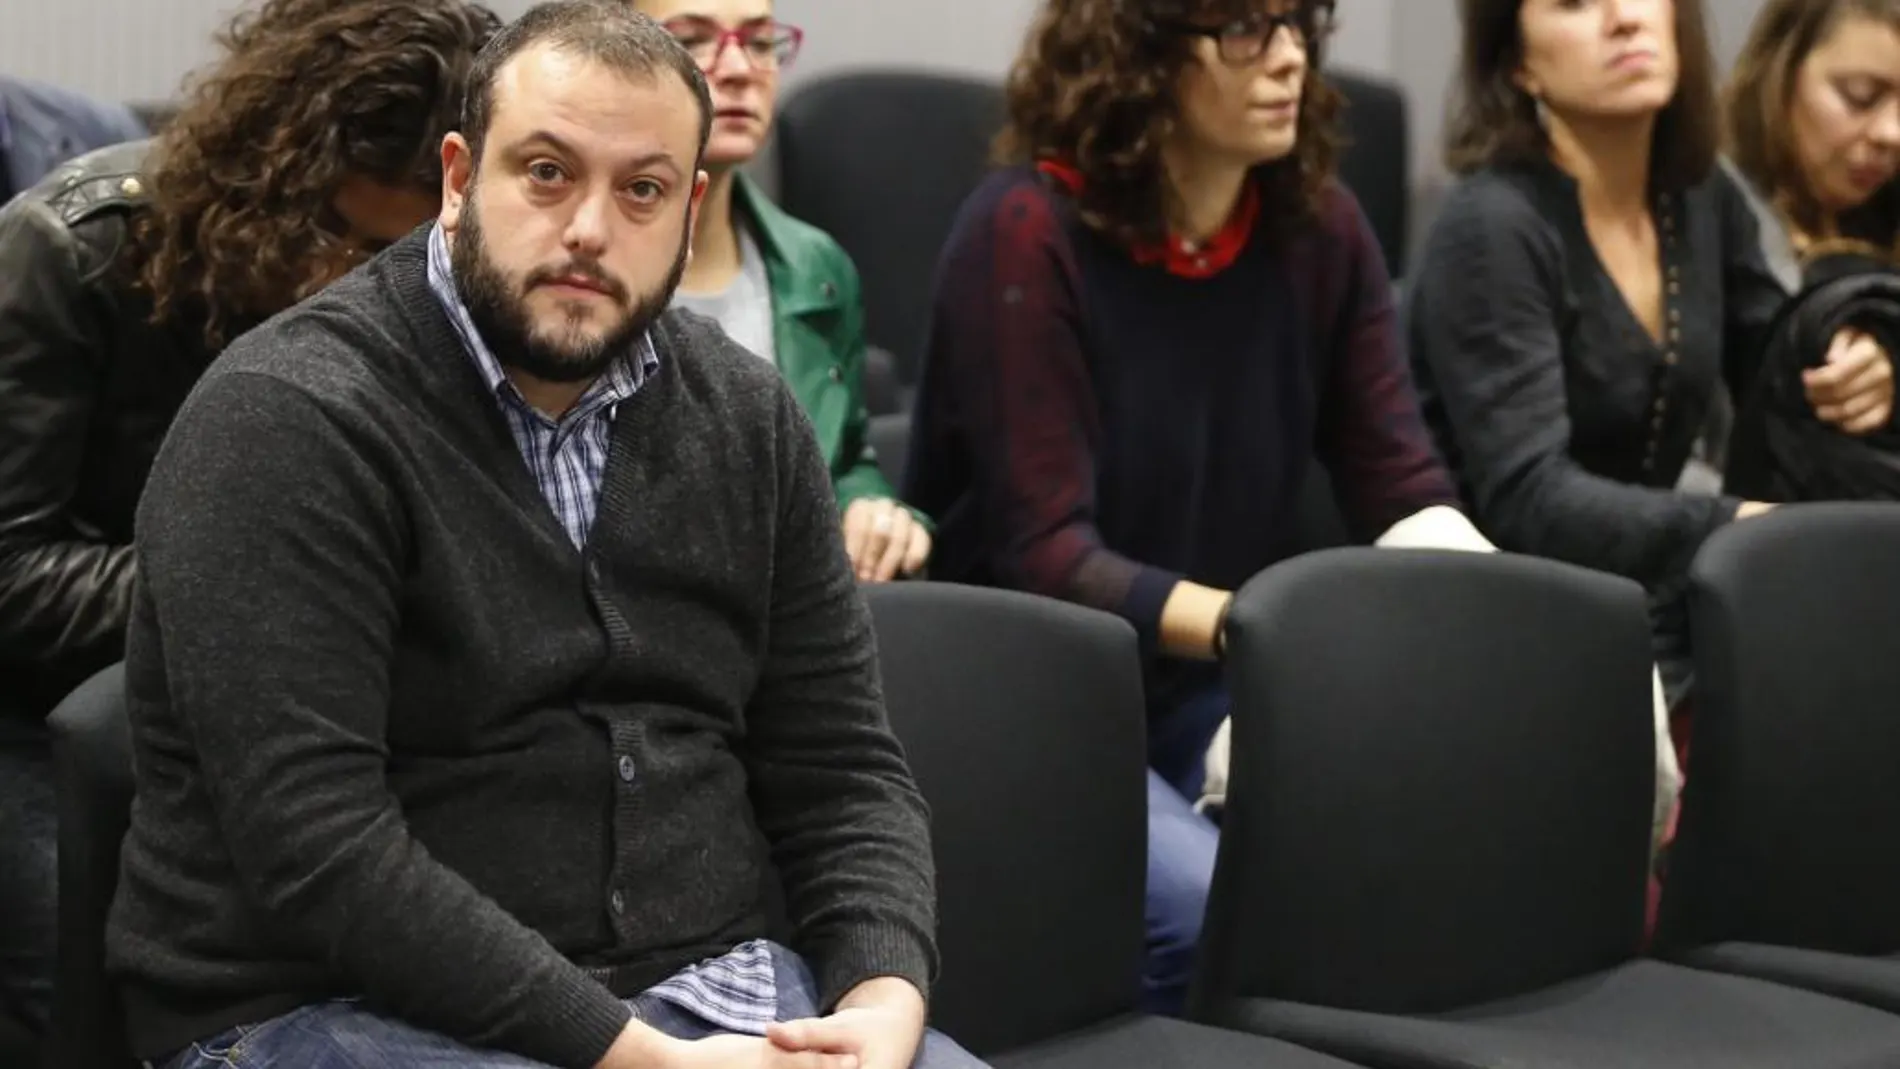 El concejal de Ahora Madrid Guillermo Zapata (i) durante el juicio que se sigue contra él hoy en la Audiencia Nacional por el tuit que publicó sobre Irene Villa en 2011